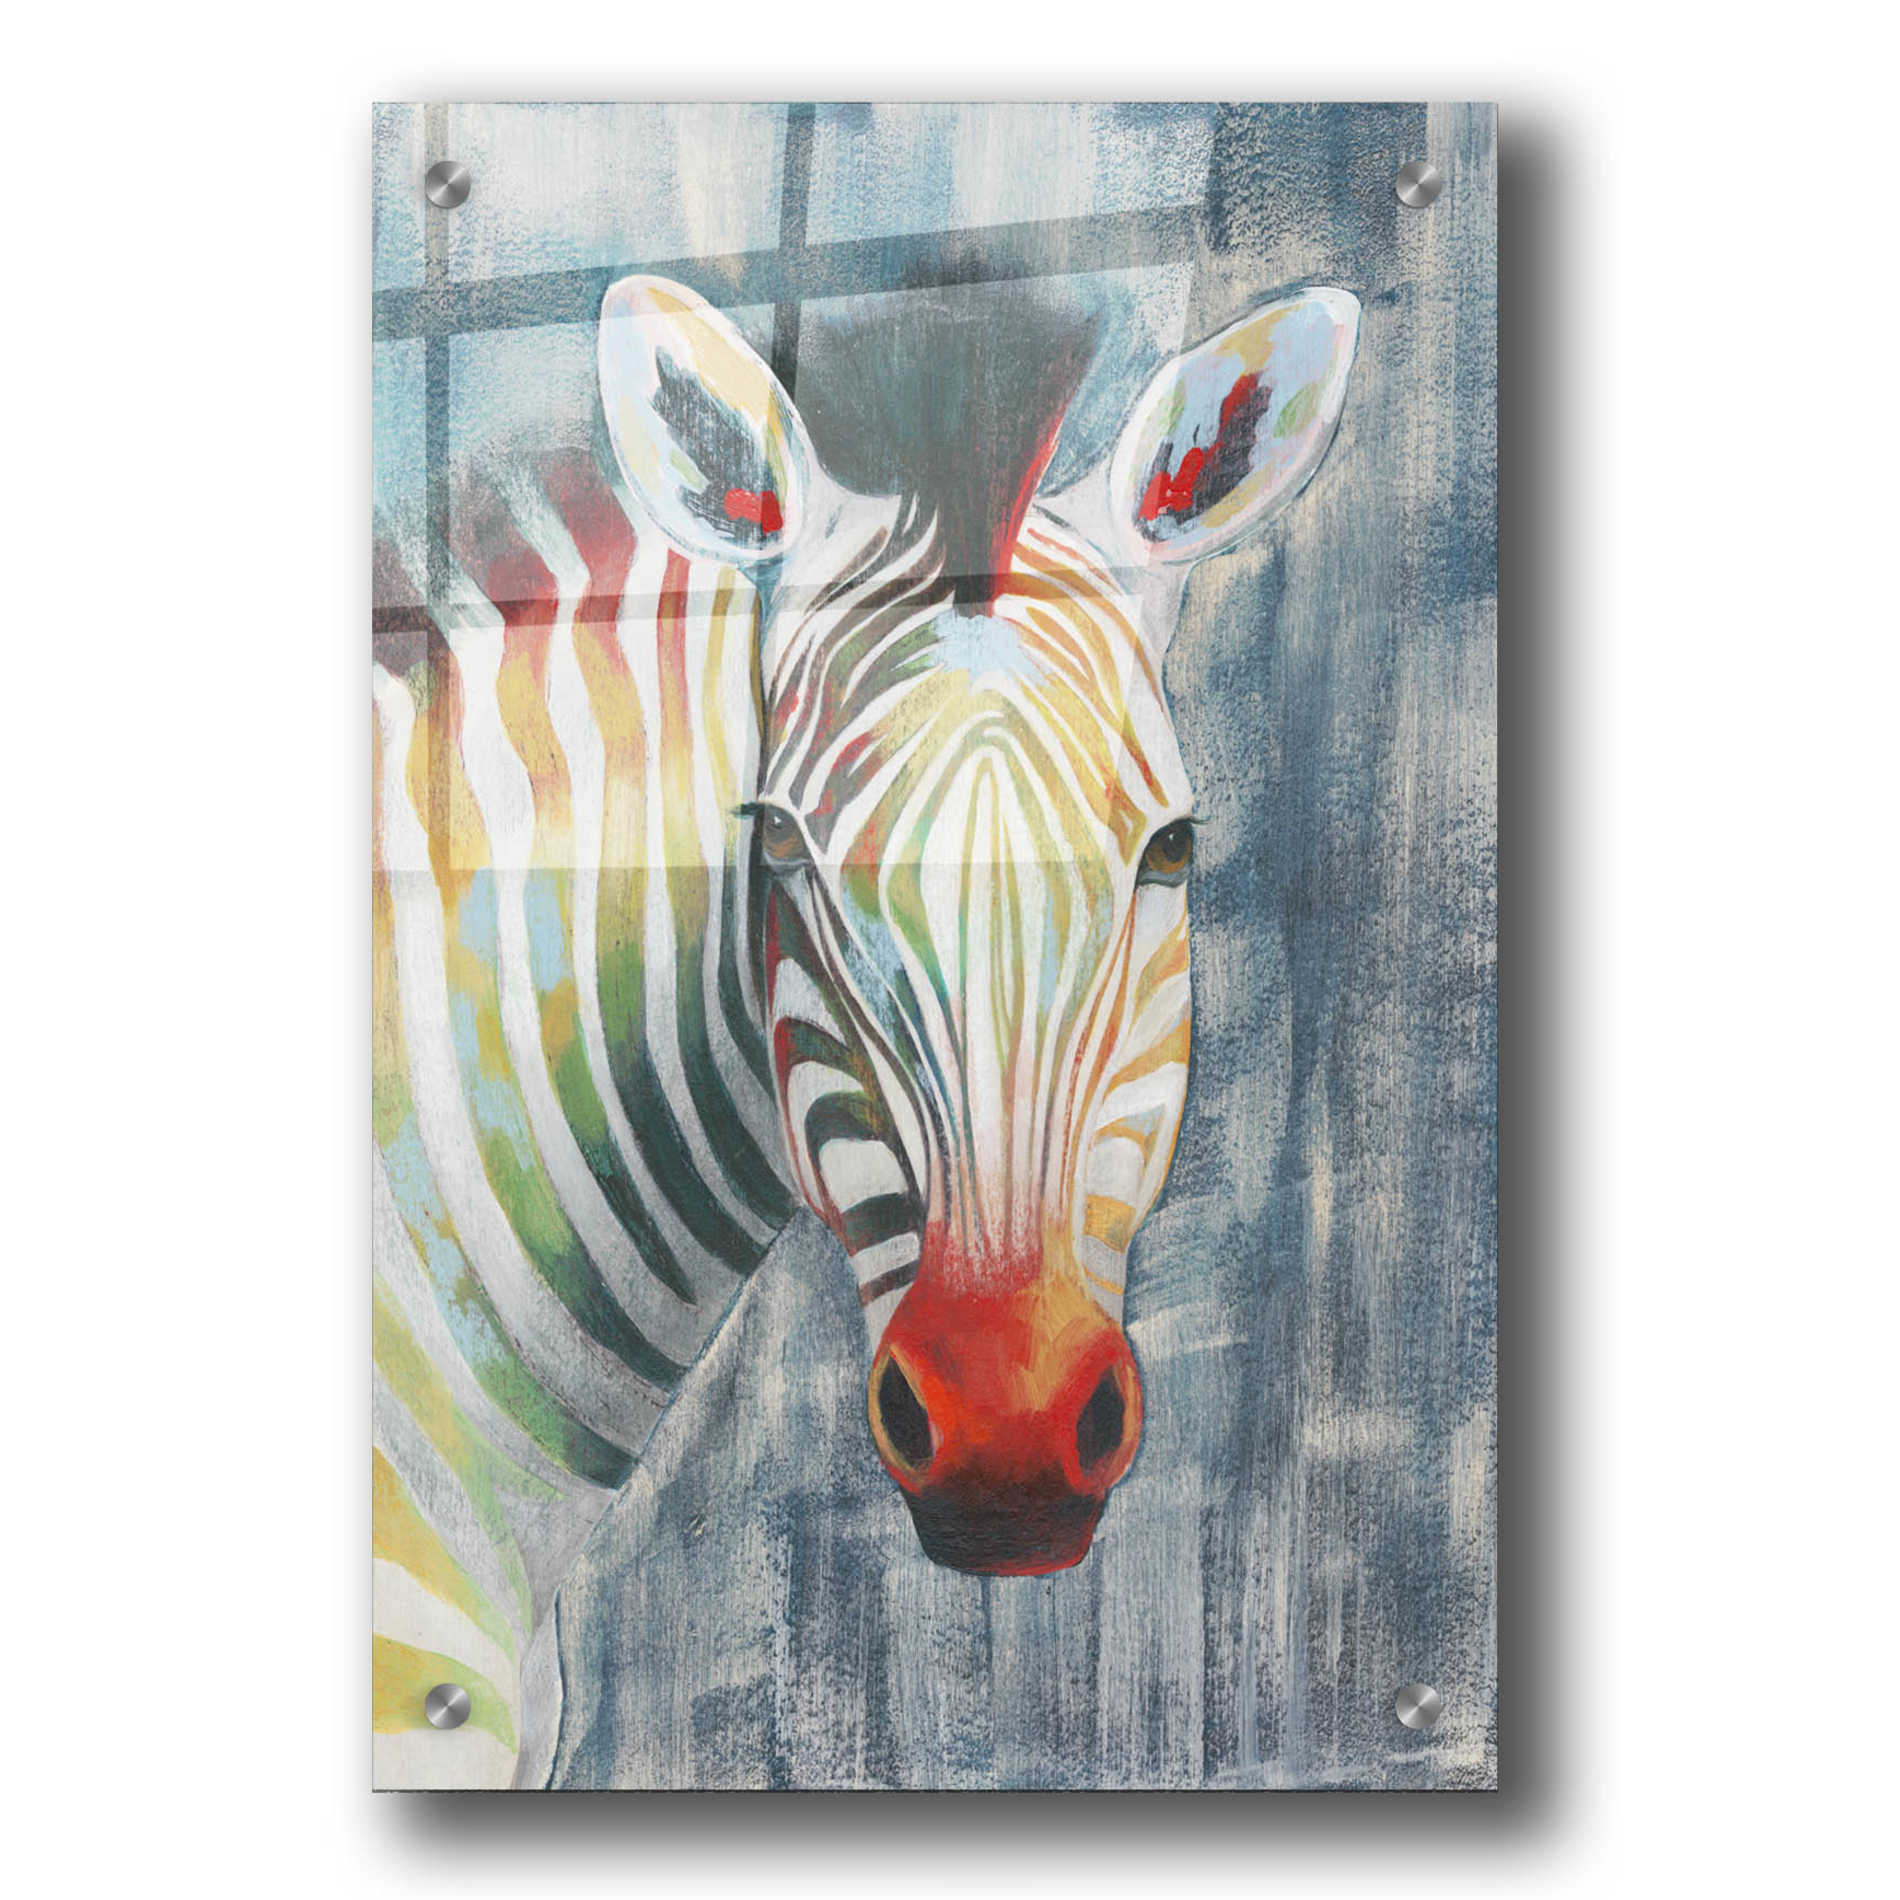 Epic Art 'Prism Zebra I' by Grace Popp, Acrylic Wall Glass,24x36